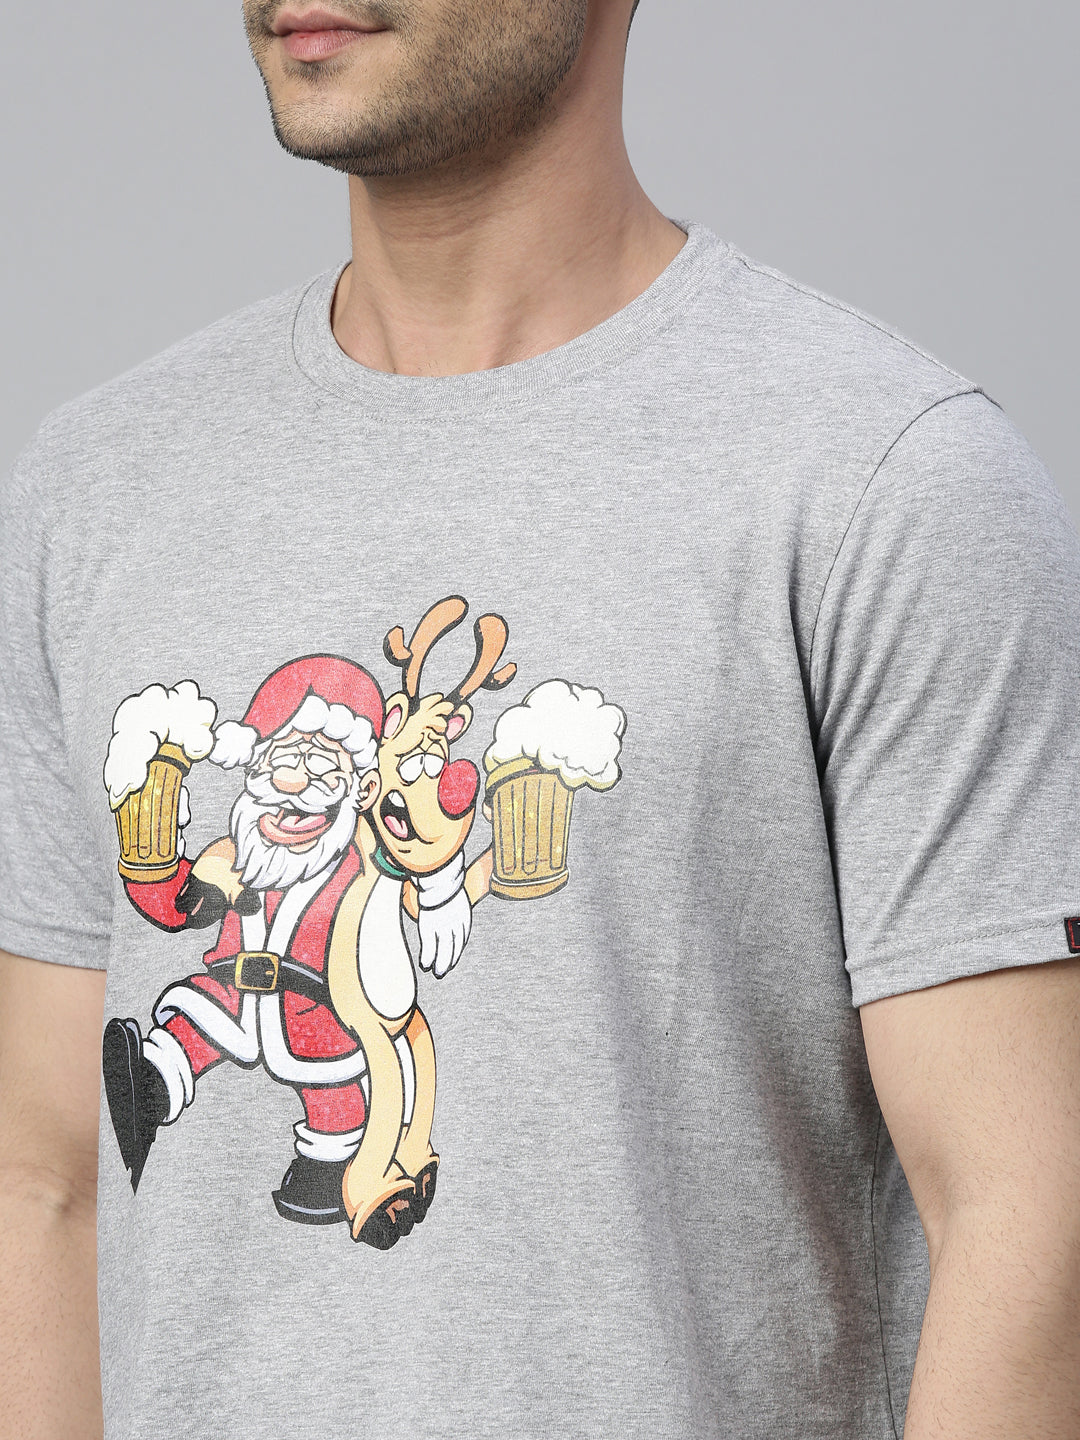 Cheers Santa T-Shirt Graphic T-Shirts Bushirt   